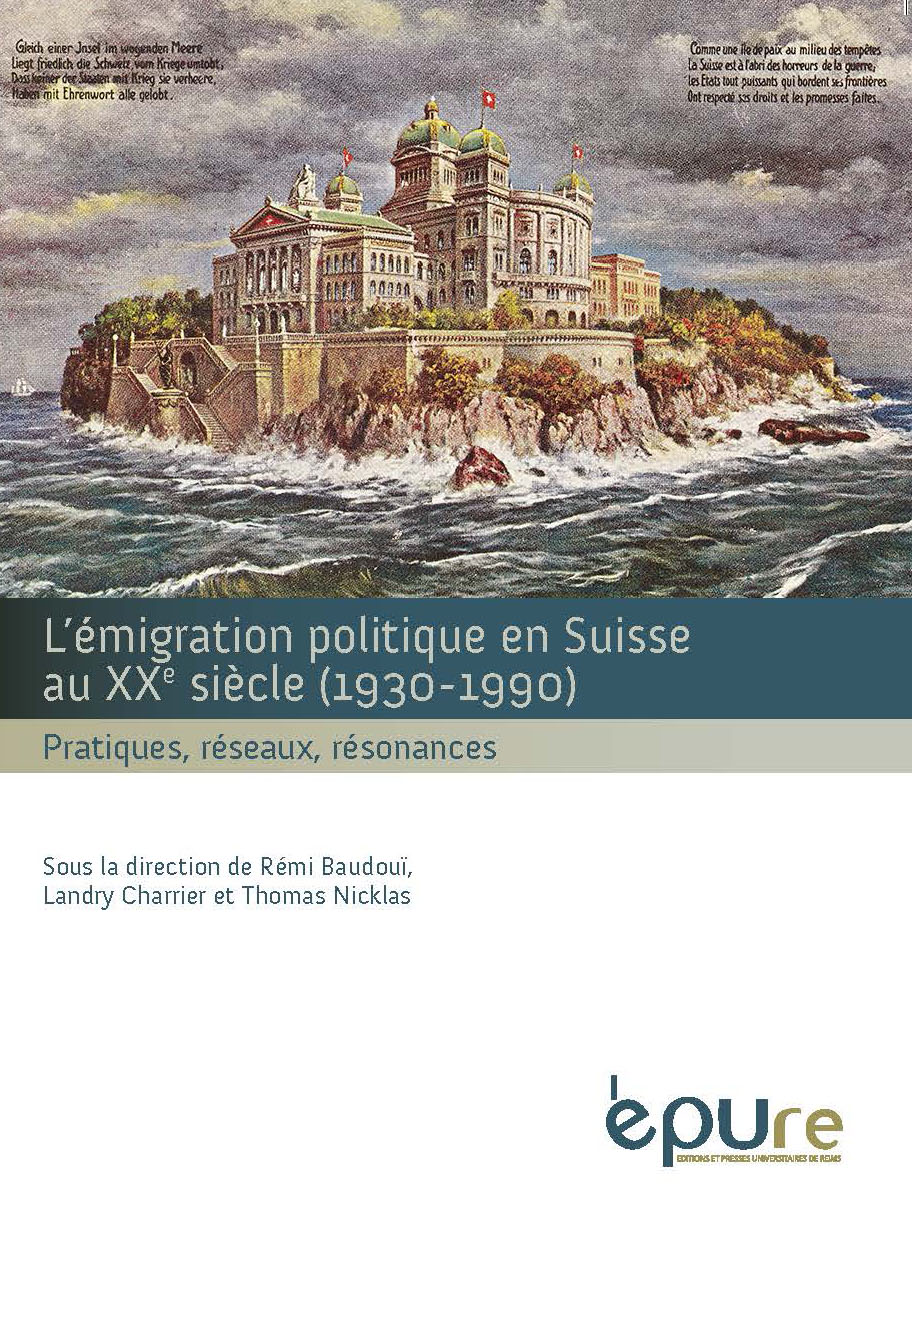 L'émigration politique en Suisse au XXe siècle (1930-1990) 